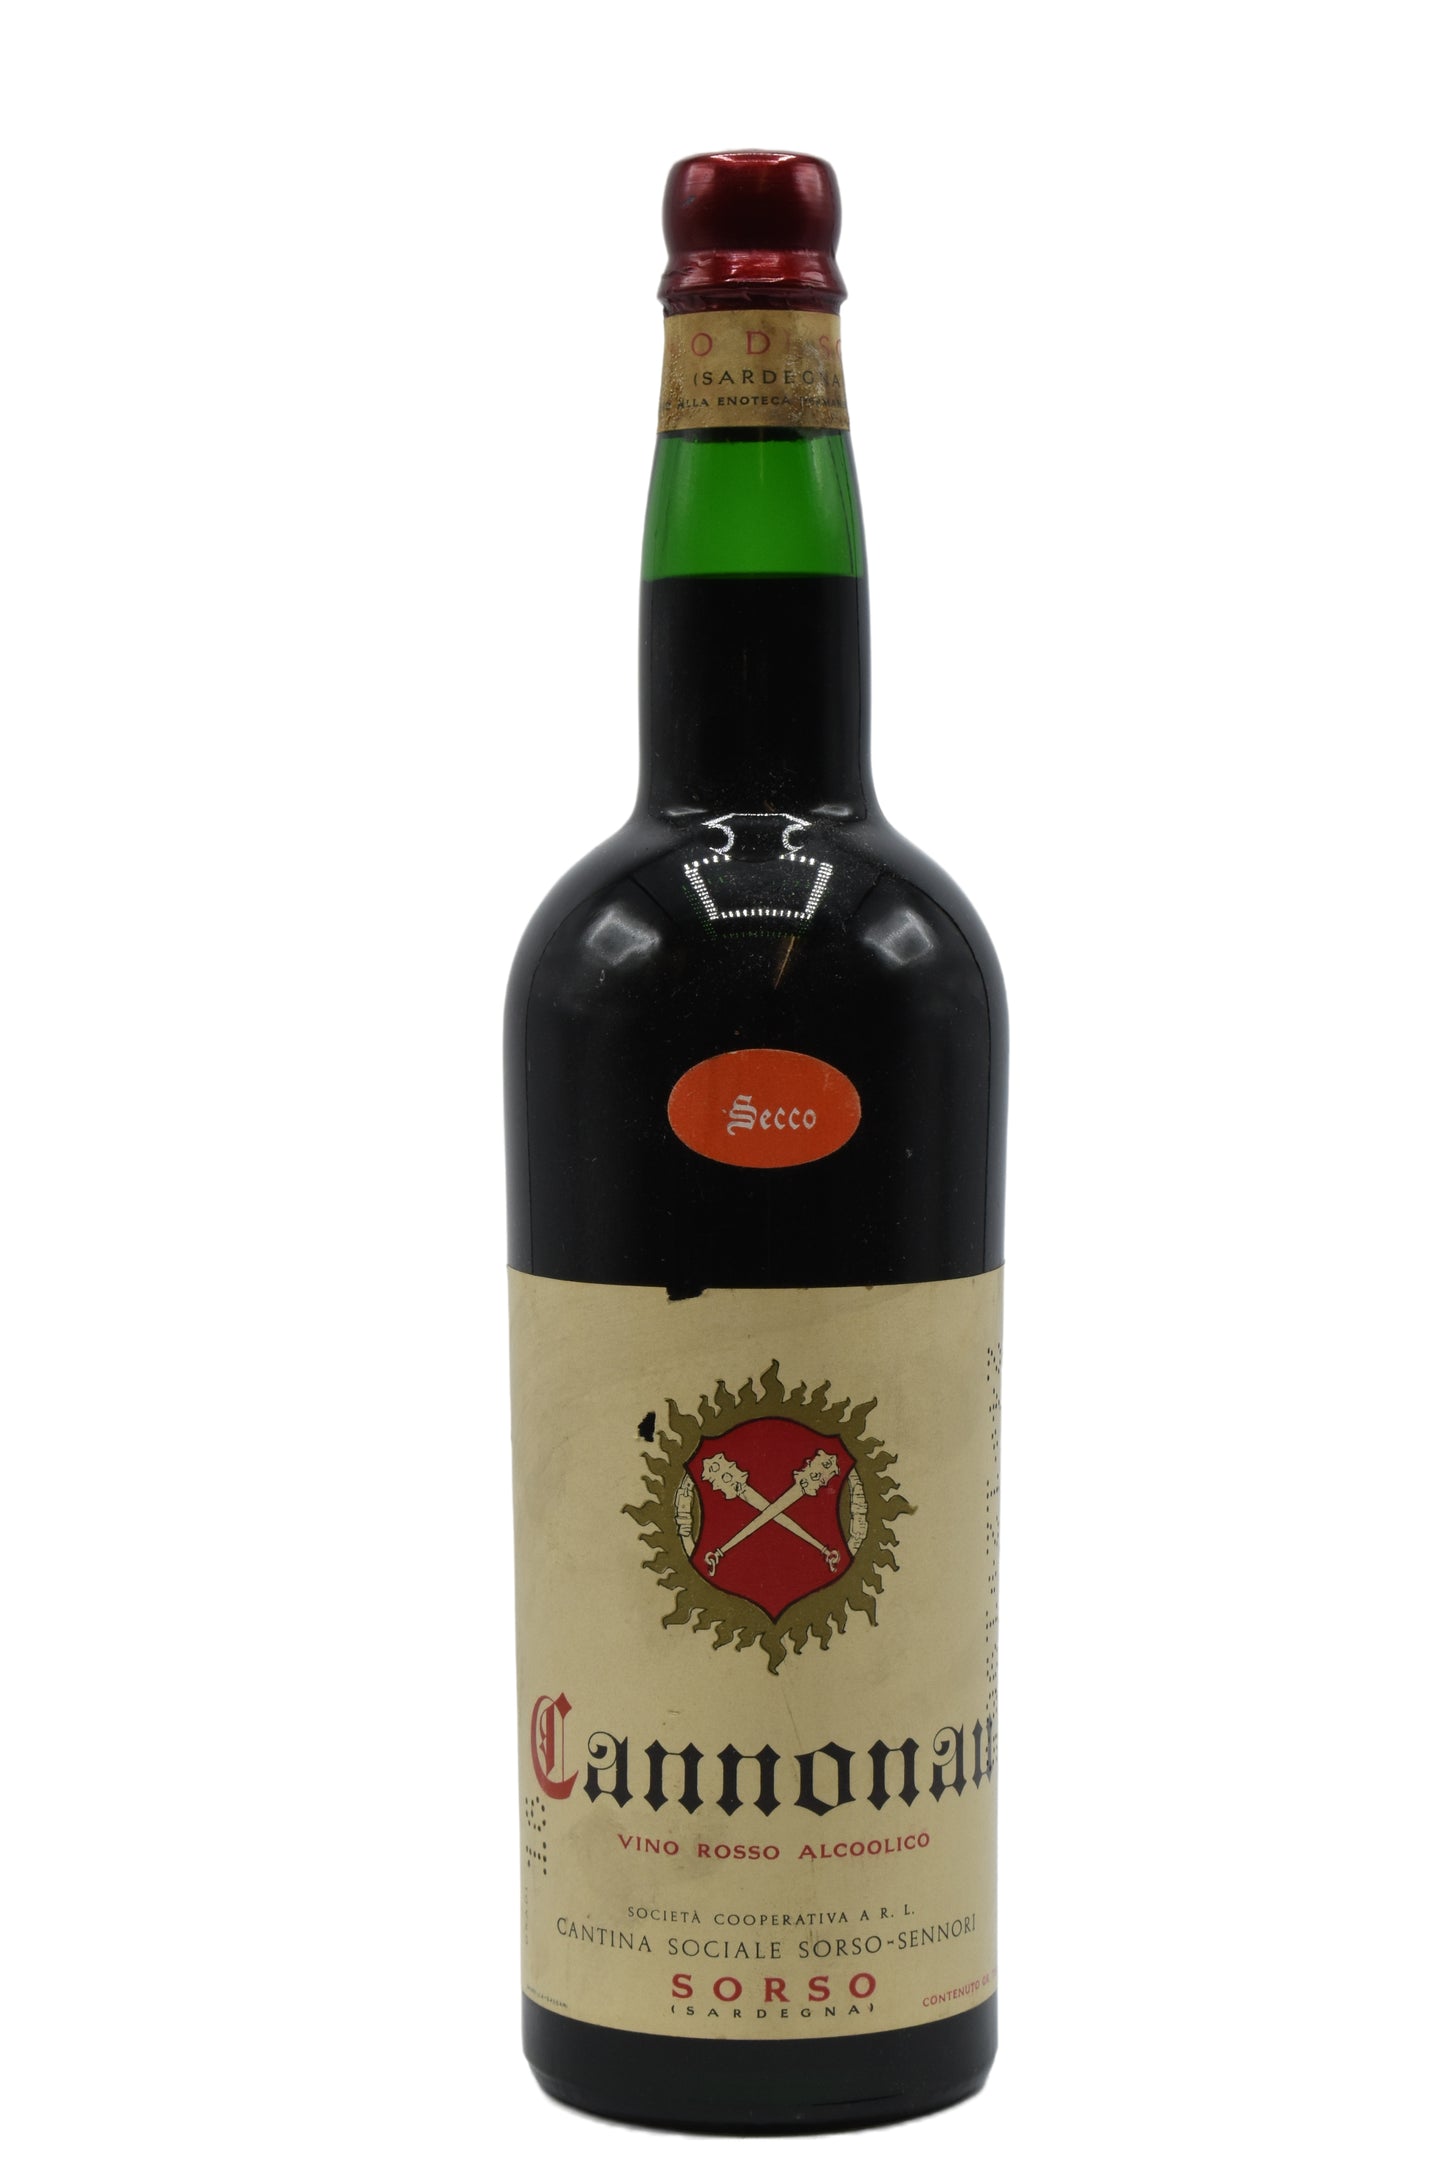 1965 Cantina Sociale Sorso-Sennori Cannonau di Sardegna Secco 750ml - Walker Wine Co.